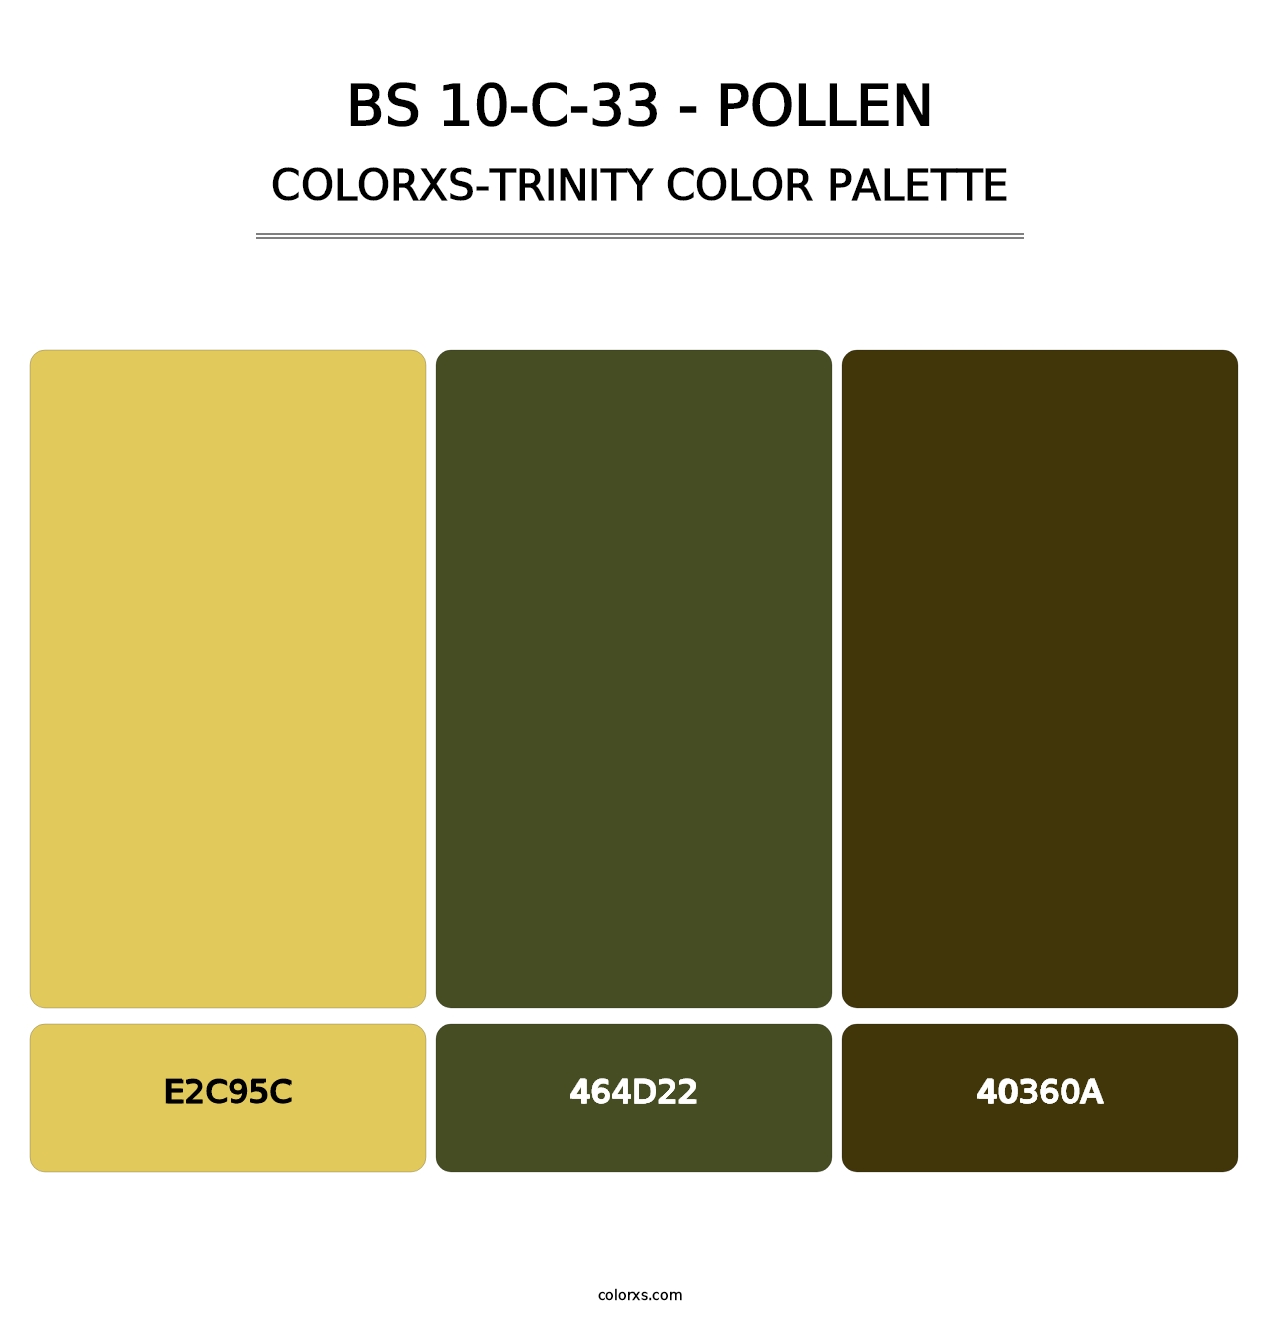 BS 10-C-33 - Pollen - Colorxs Trinity Palette